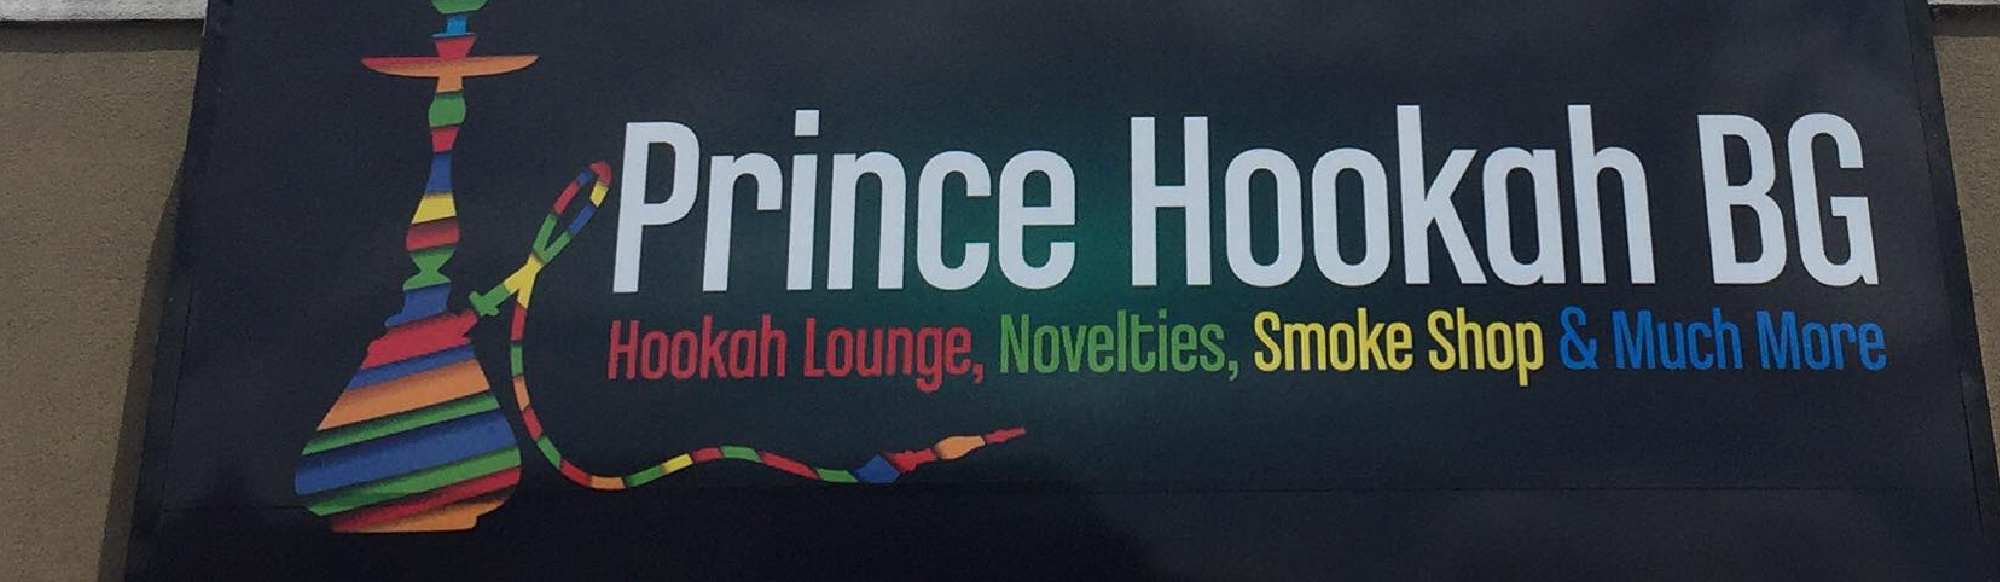 image of prince hooakh smoke shop in bowling green kentucky